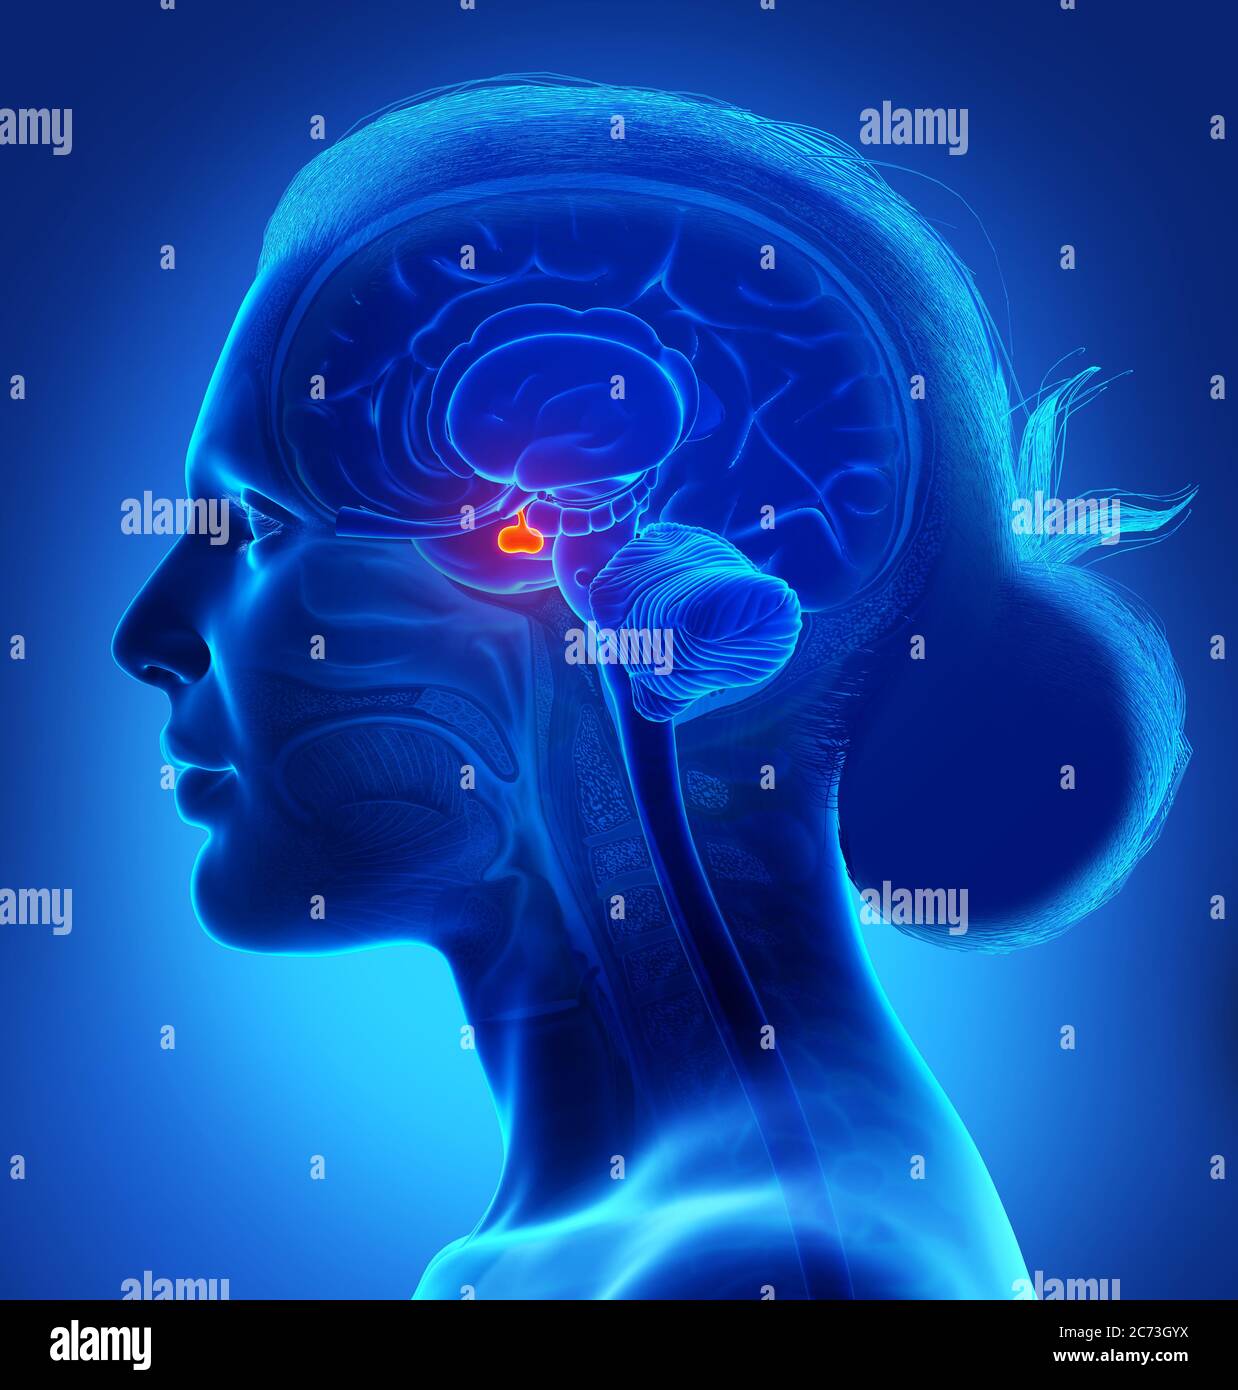 Rappresentazione 3d illustrazione medica di una femmina anatomia cerebrale GHIANDOLA PITUITARIA - sezione trasversale Foto Stock